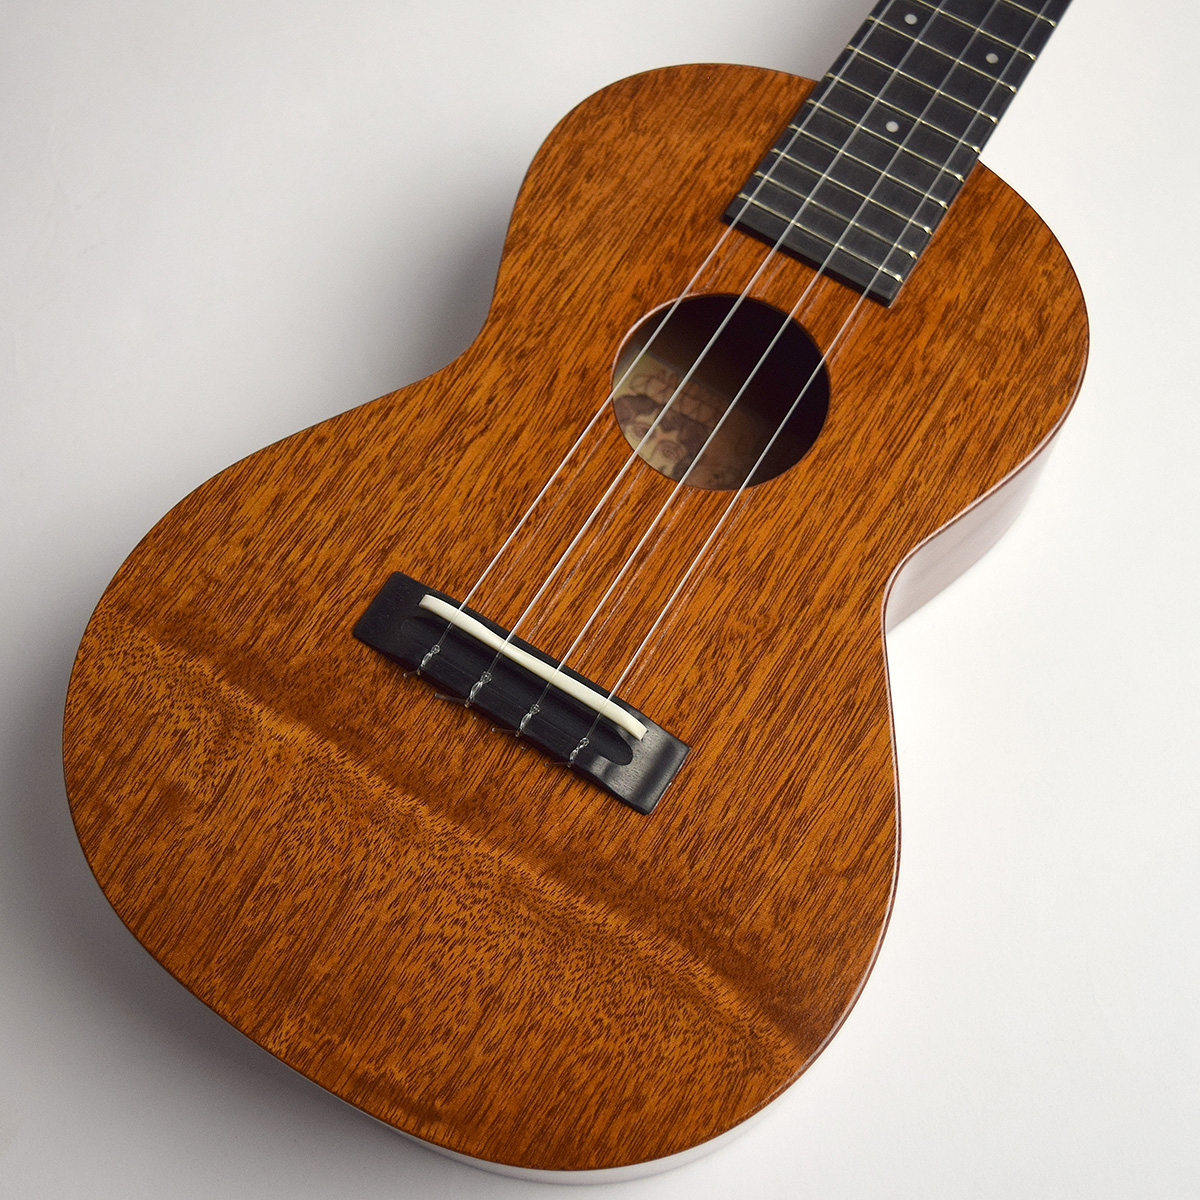 tkitki ukulele ECO-C maho KIYOSAKU #861 コンサートウクレレ 日本製